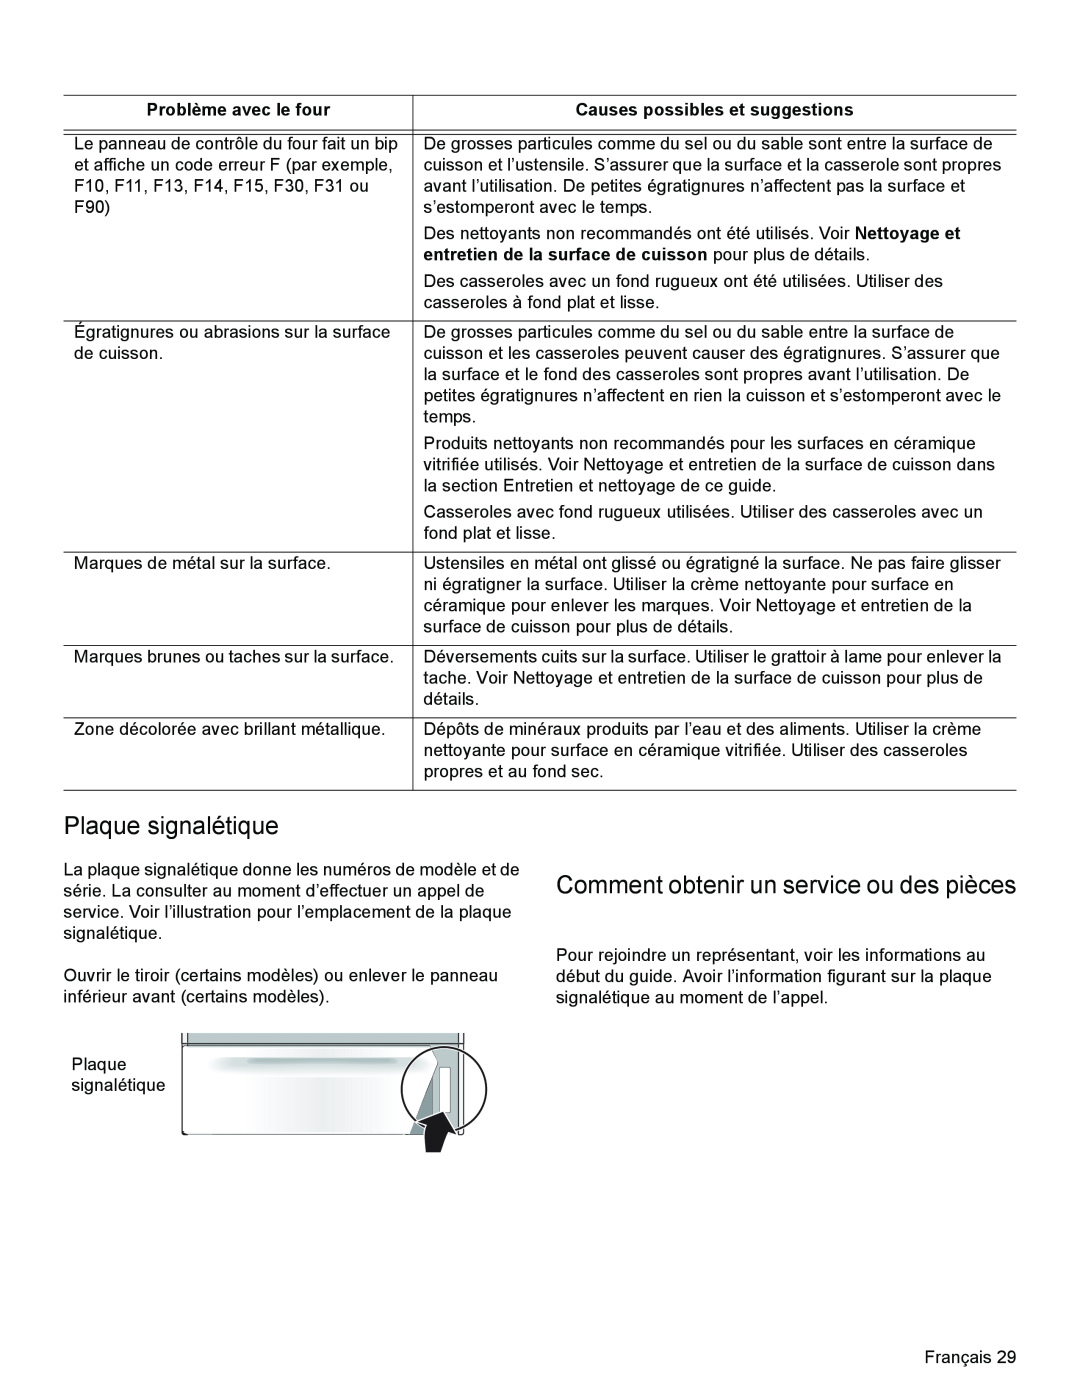 Bosch Appliances HES3053U manual Plaque signalétique, Comment obtenir un service ou des pièces, Problème avec le four 